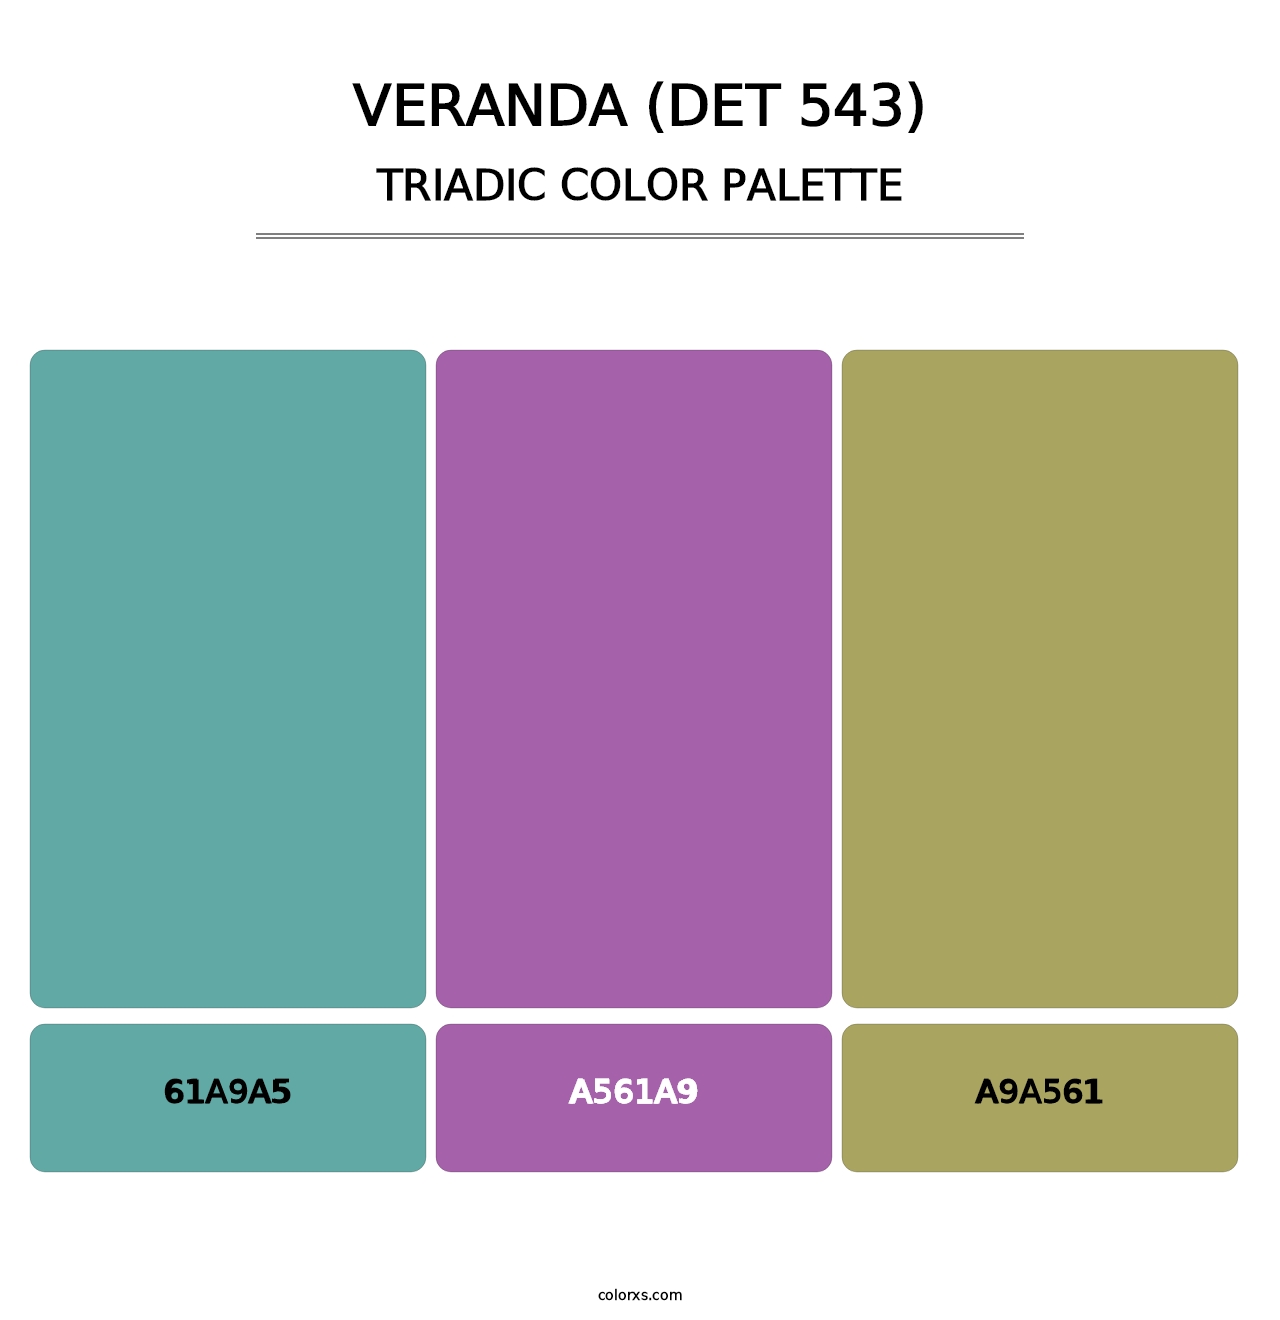 Veranda (DET 543) - Triadic Color Palette